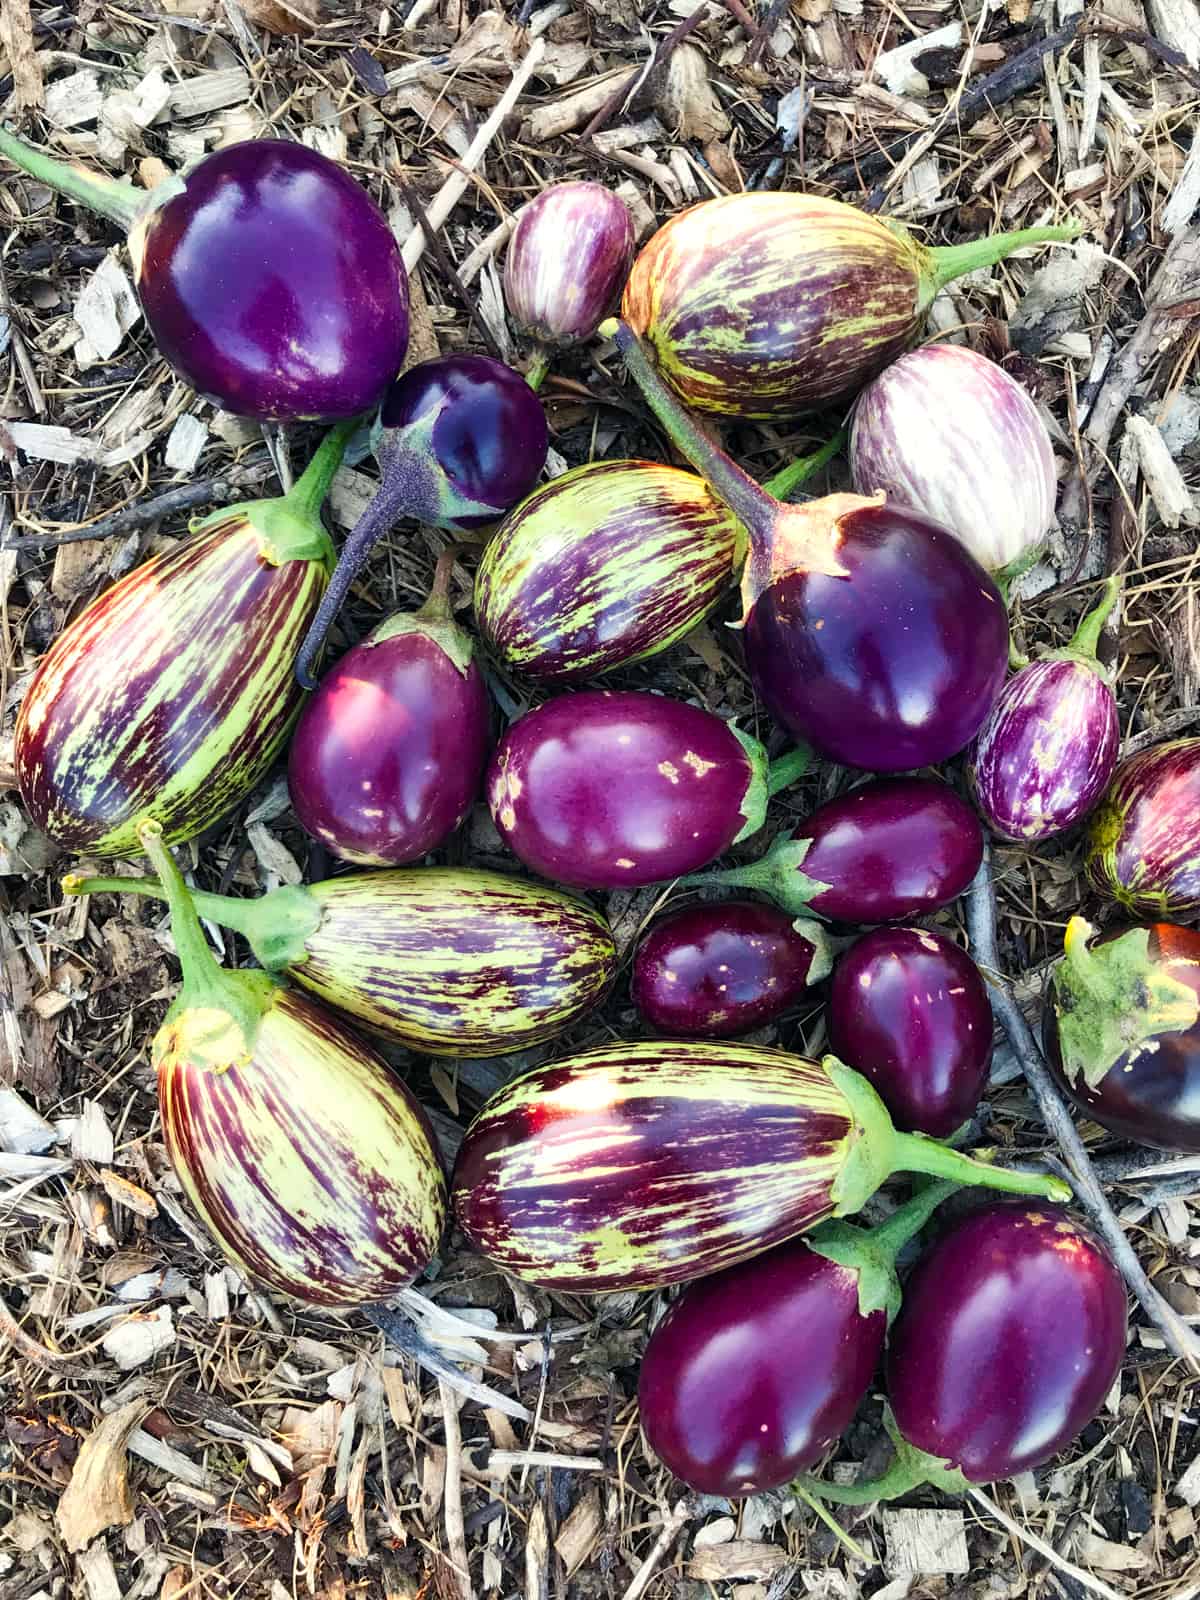 eggplants freshly harvested